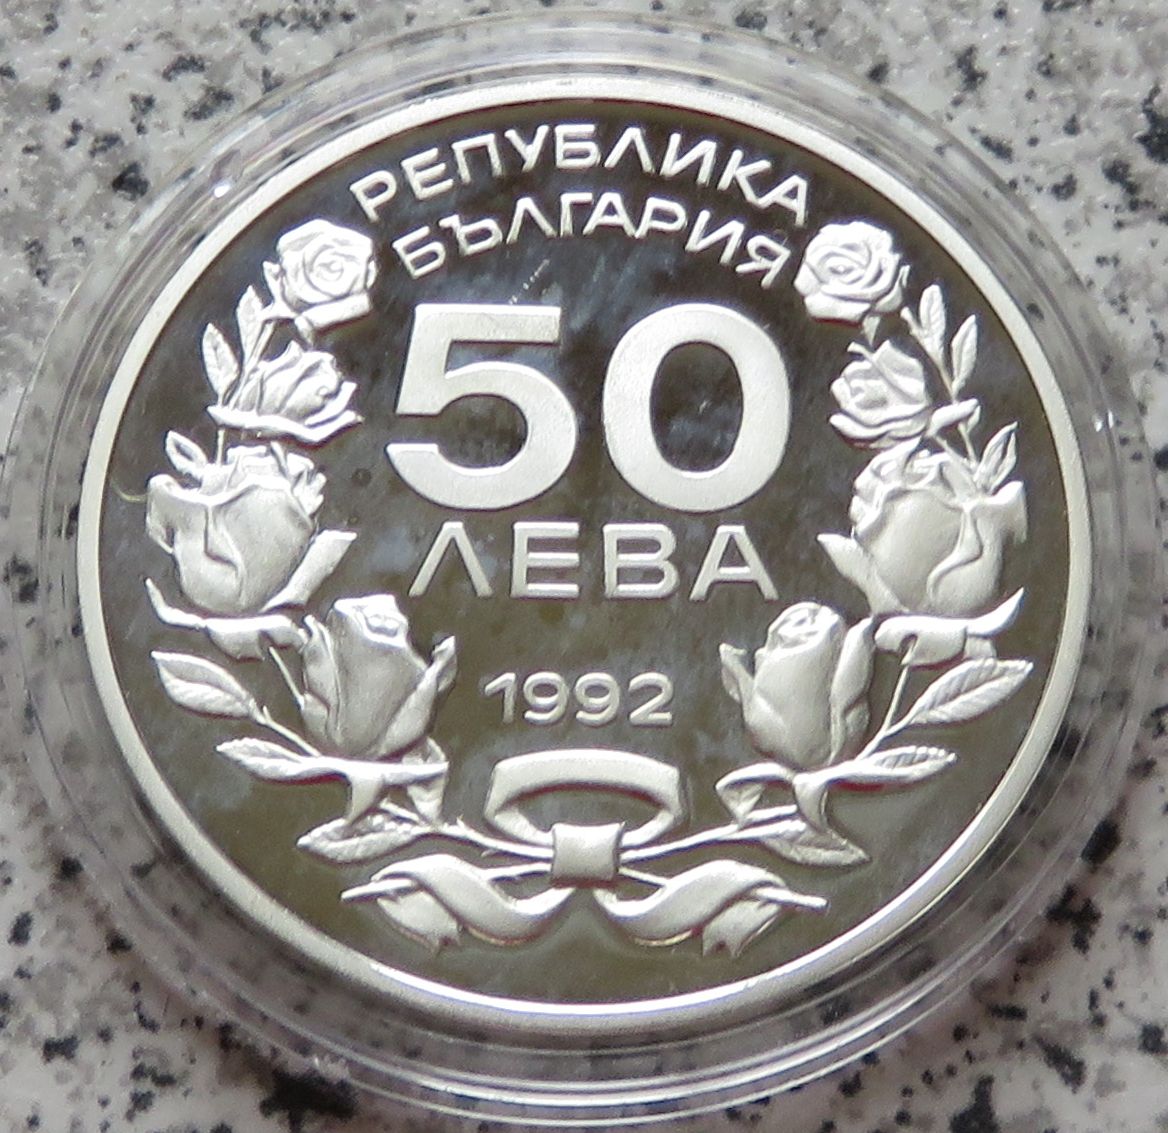  Bulgarien 50 Lewa 1992   